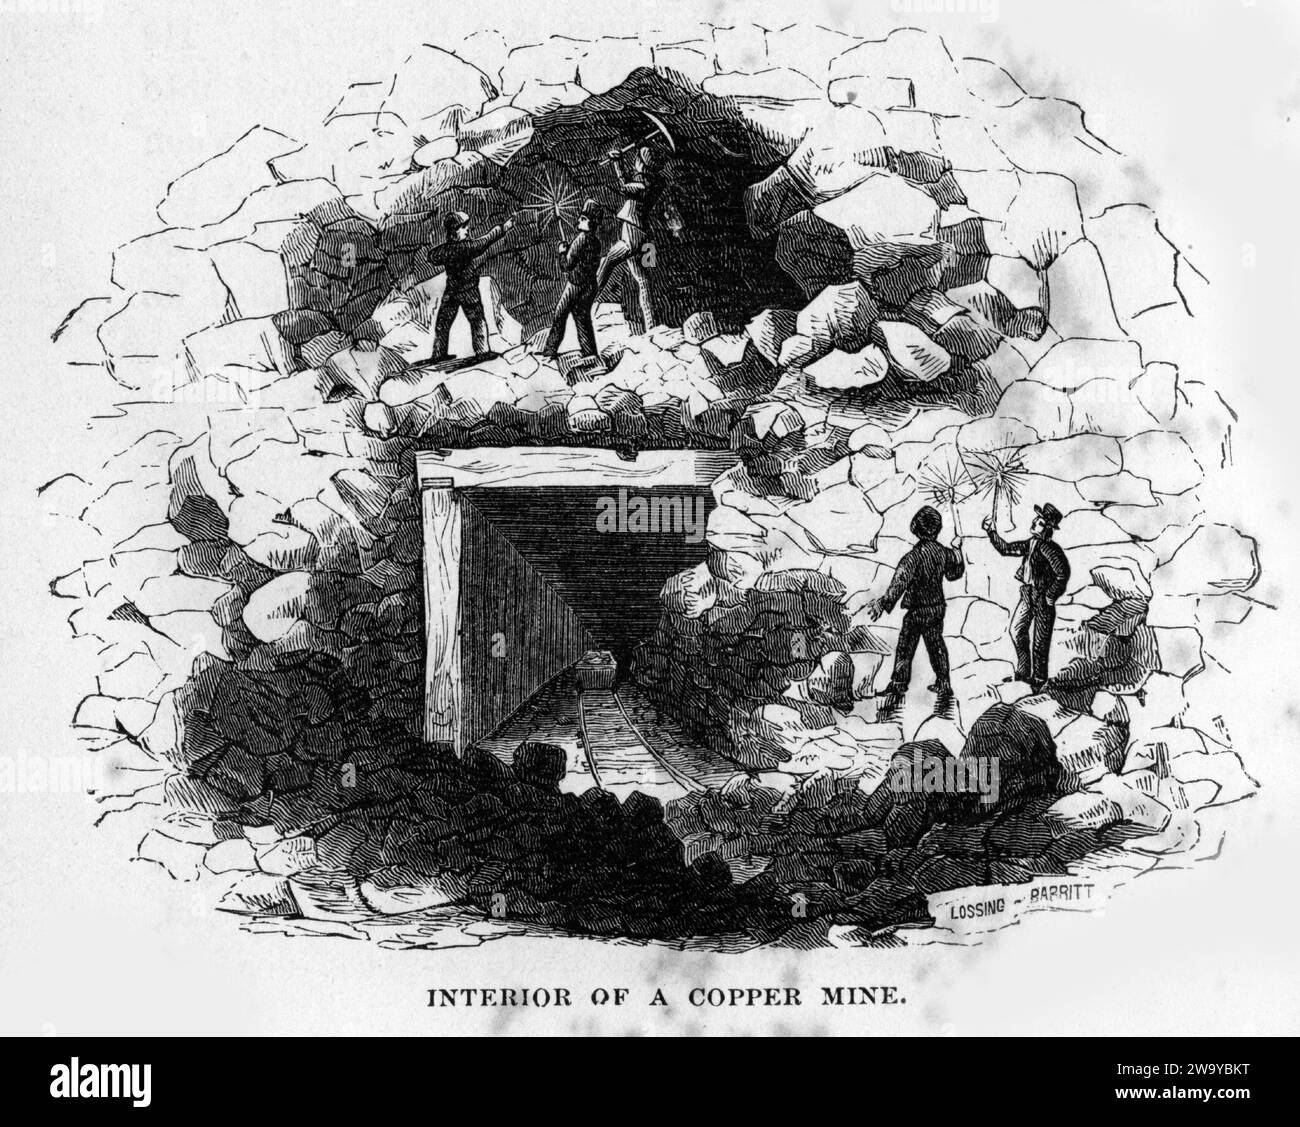 Grabado del interior de una mina de cobre, del Mundo Subterráneo, hacia 1878 Foto de stock